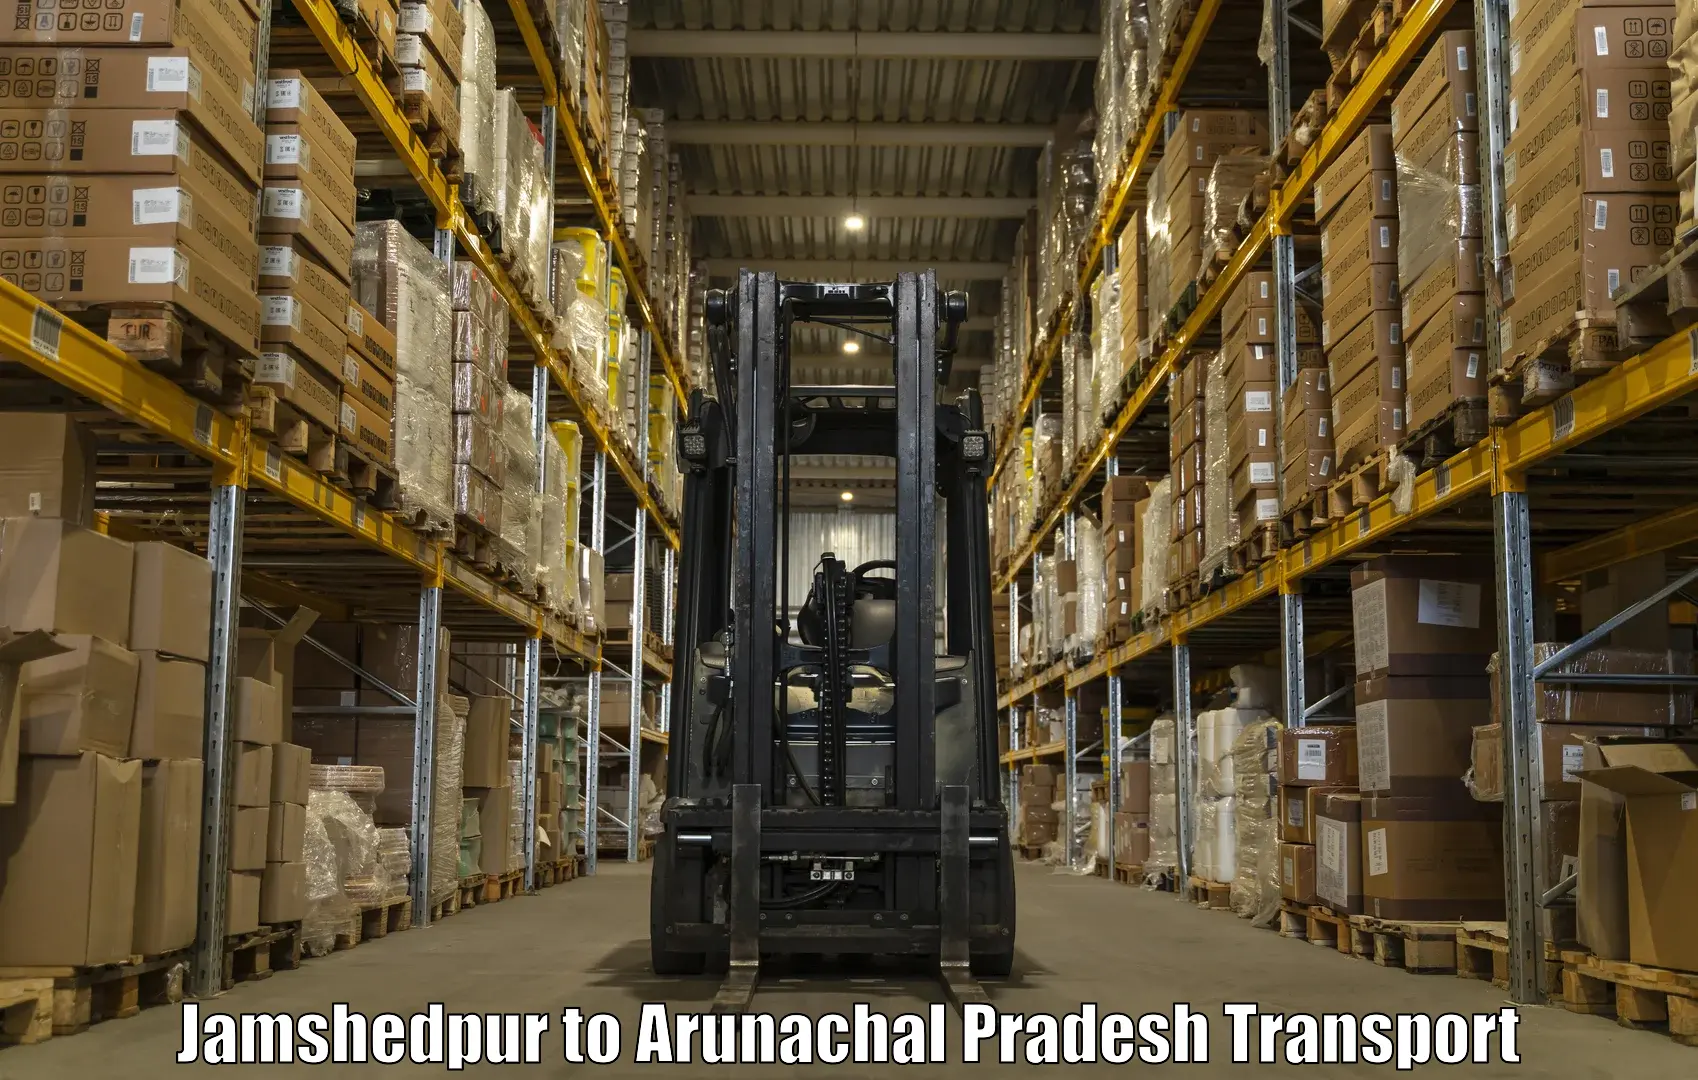 Online transport service Jamshedpur to Nirjuli